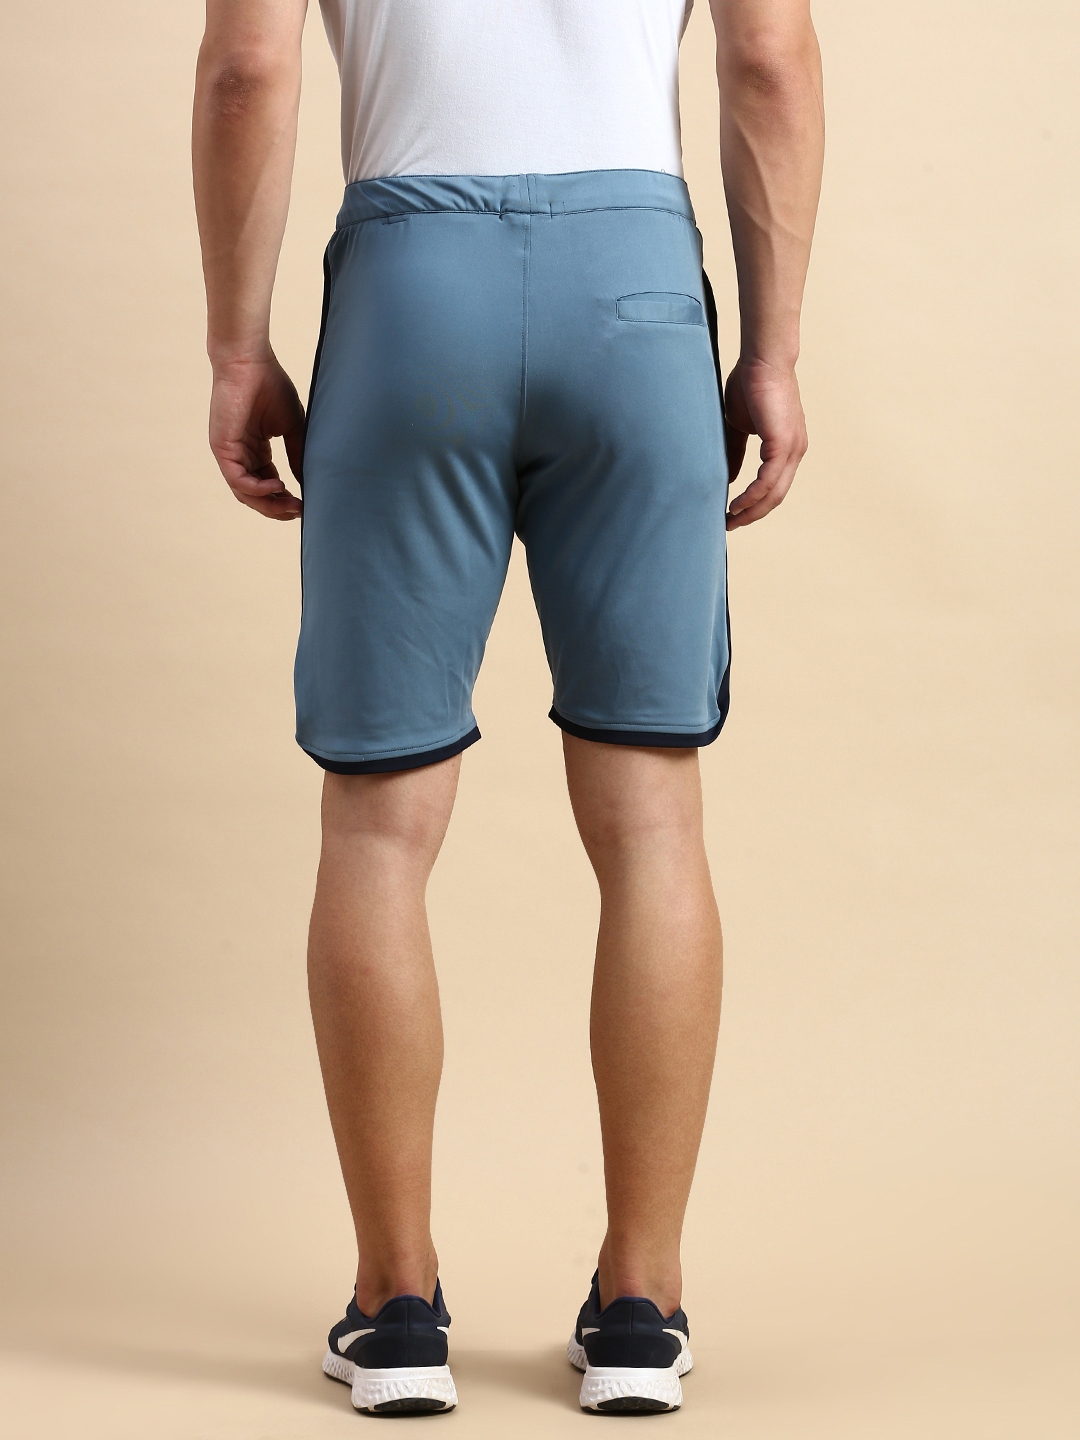 Showoff | SHOWOFF Men's Knee Length Solid Blue Mid-Rise Regular Shorts 2